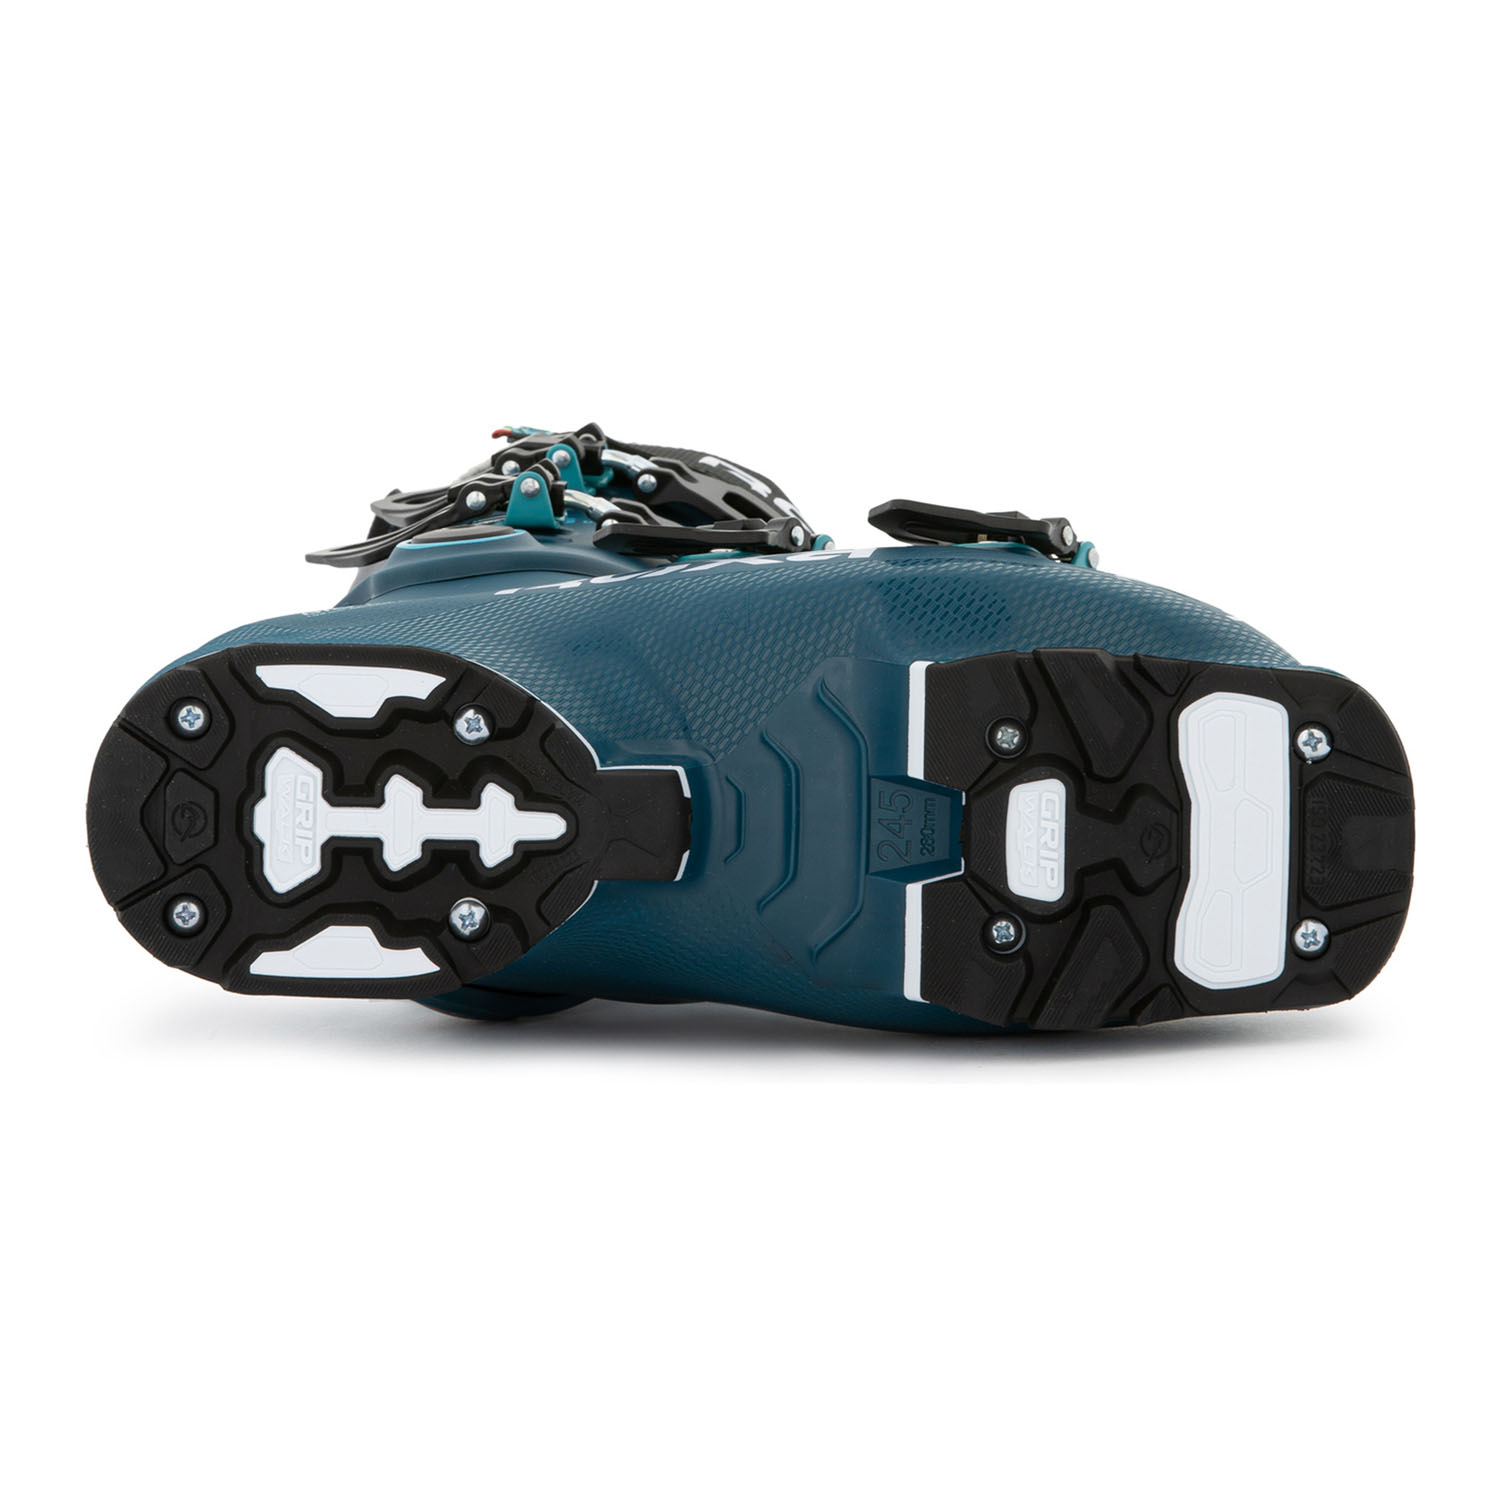 Горнолыжные ботинки ROXA Rfit W 95 Gw Ocean Blue/Aqua